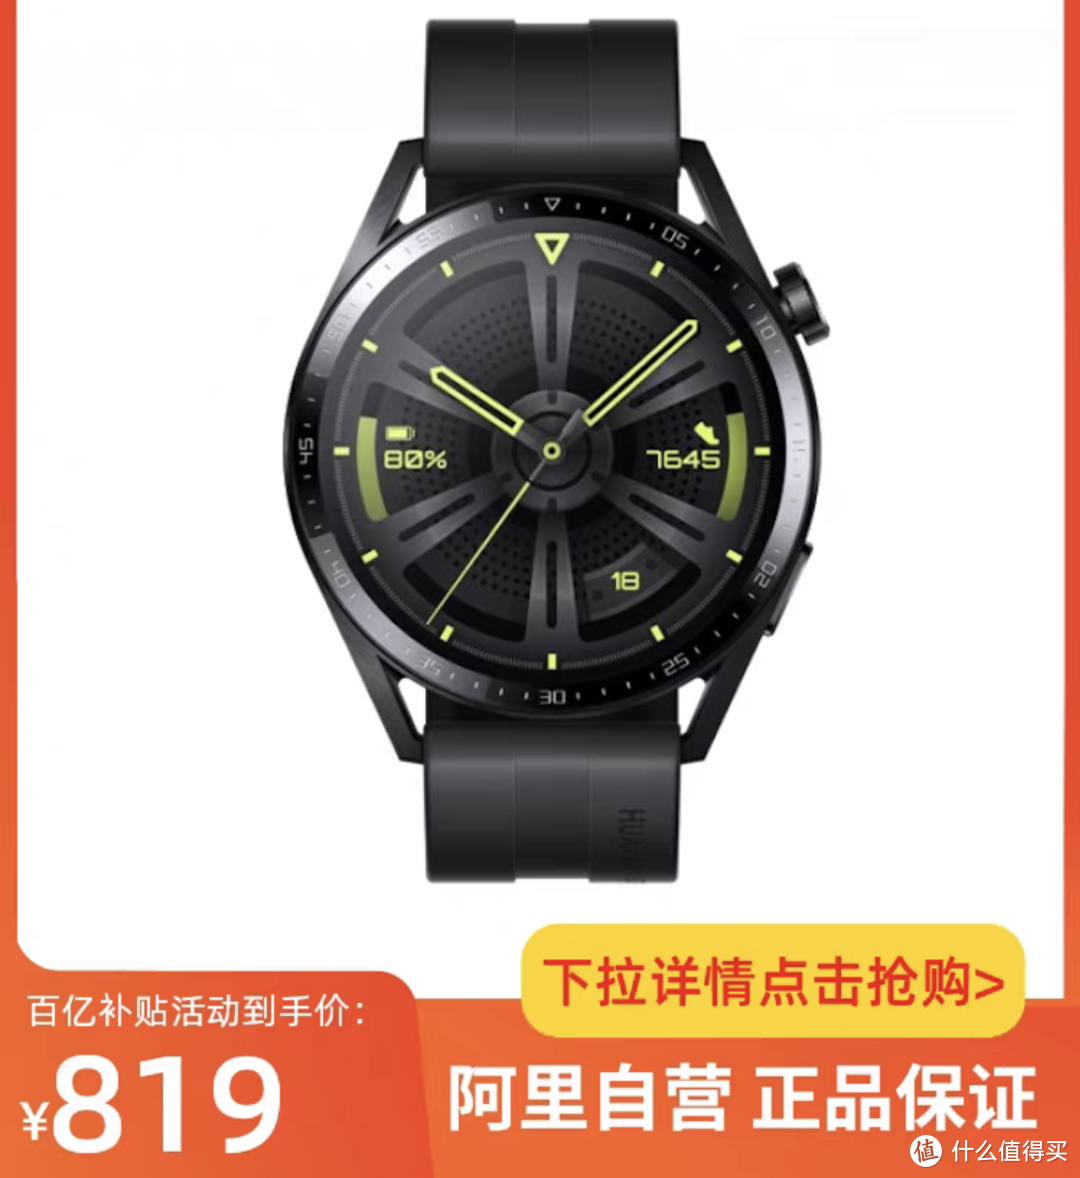 华为手表好价格商品清单，跑步运动还是挺不错的运动手表品牌！最低692元